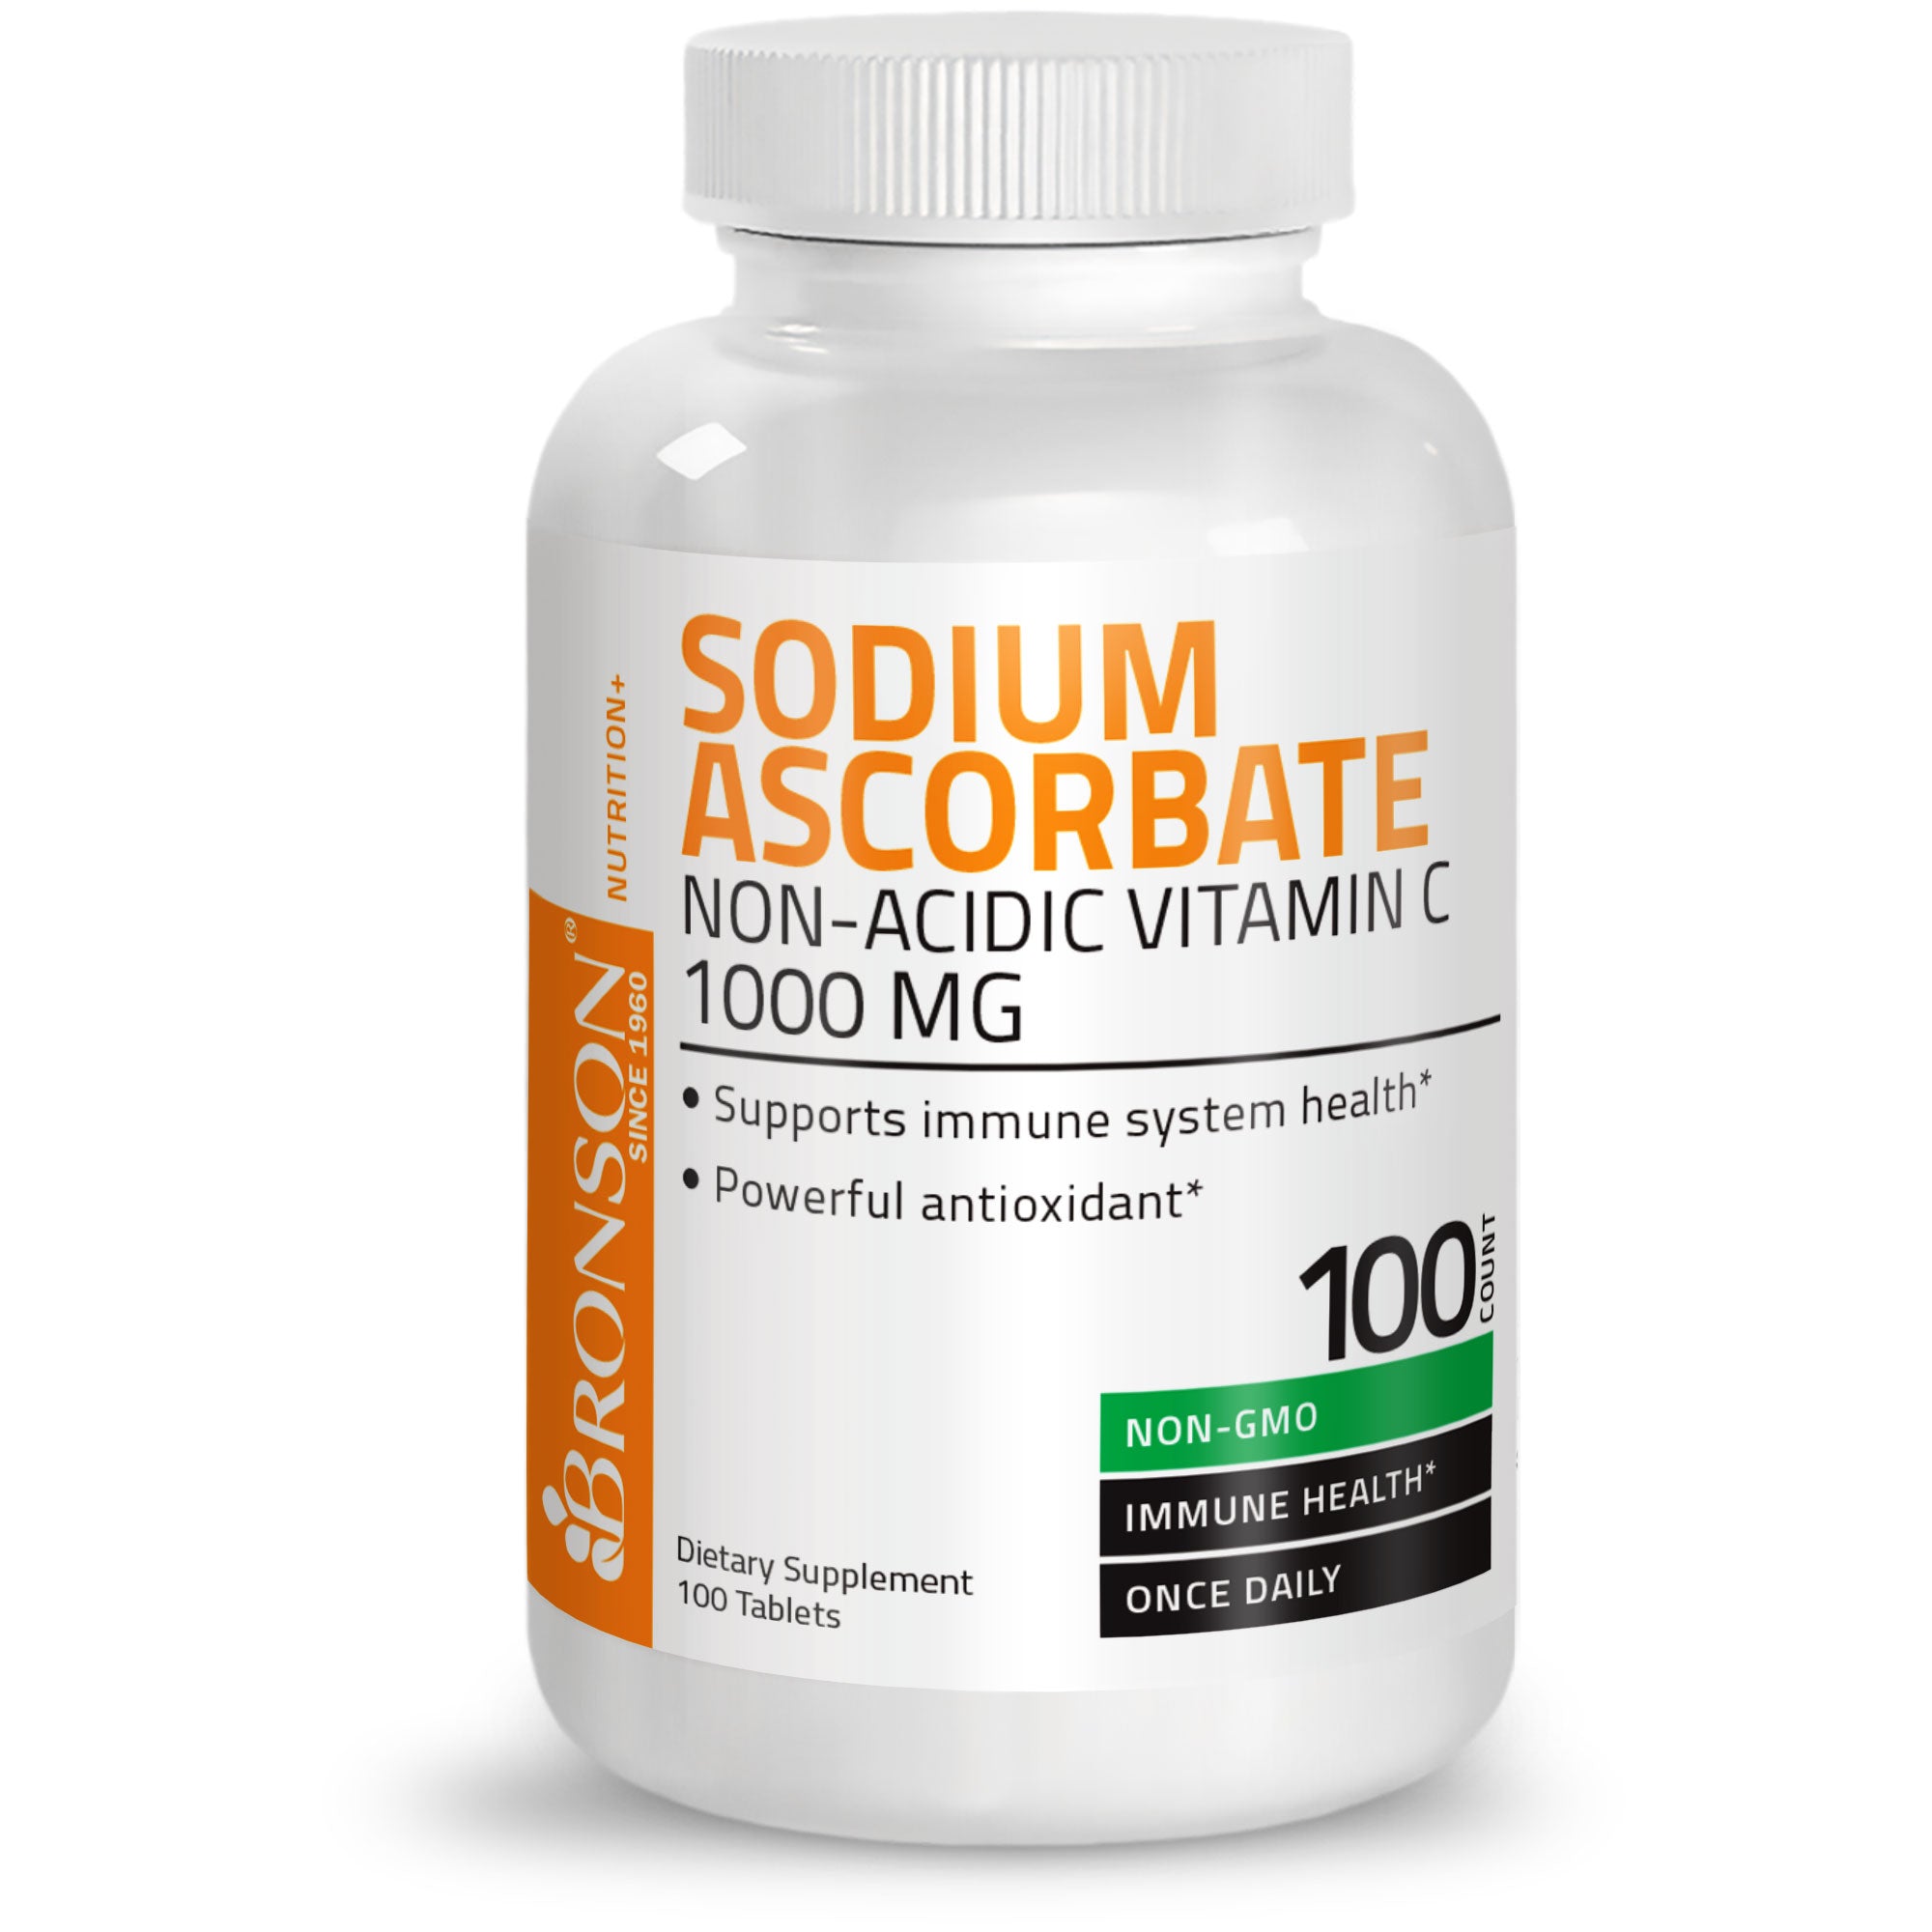 Vitamin C Sodium Ascorbate Non-Acidic Non-GMO - 1000 mg view 9 of 4